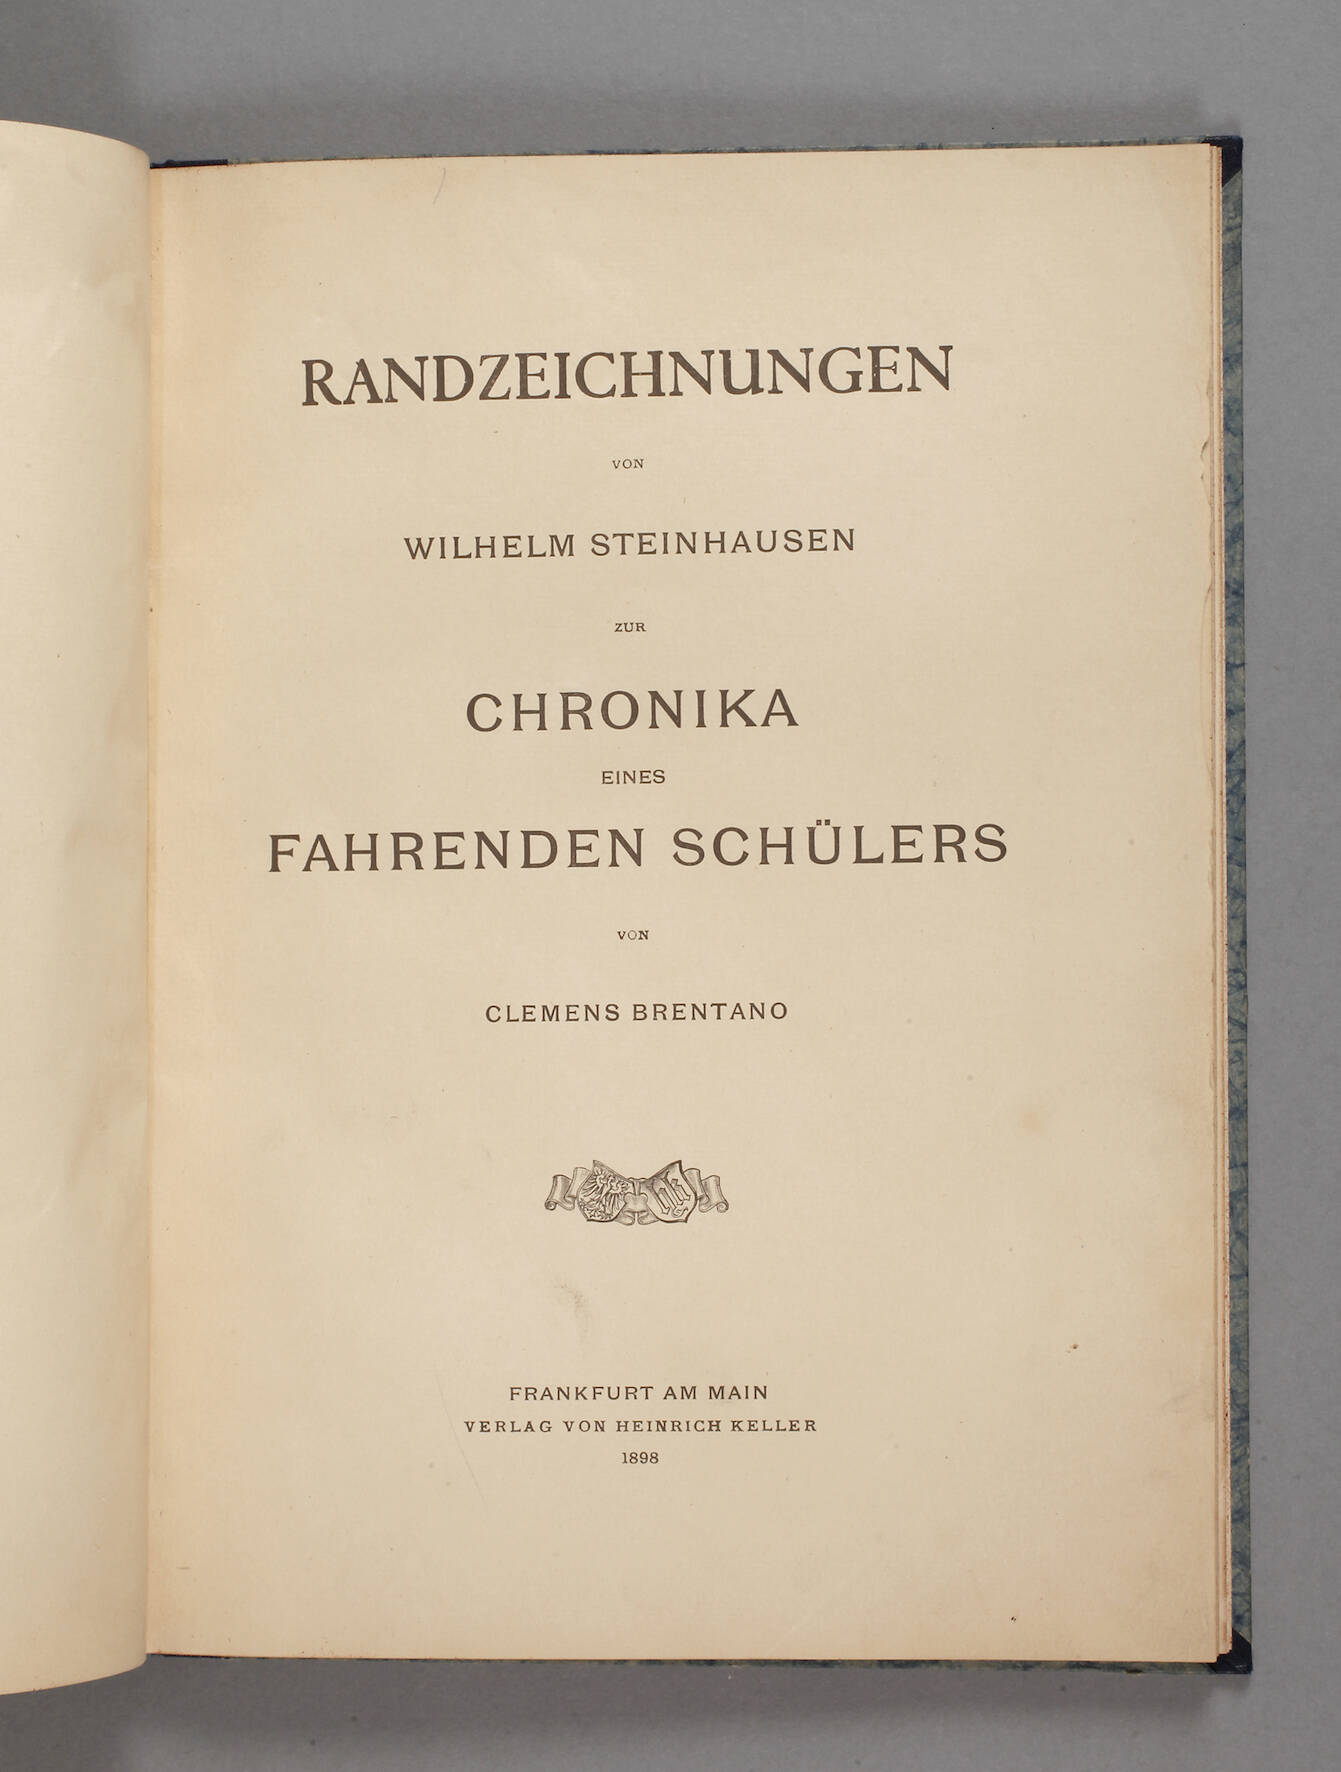 Randzeichnungen von Wilhelm Steinhausen